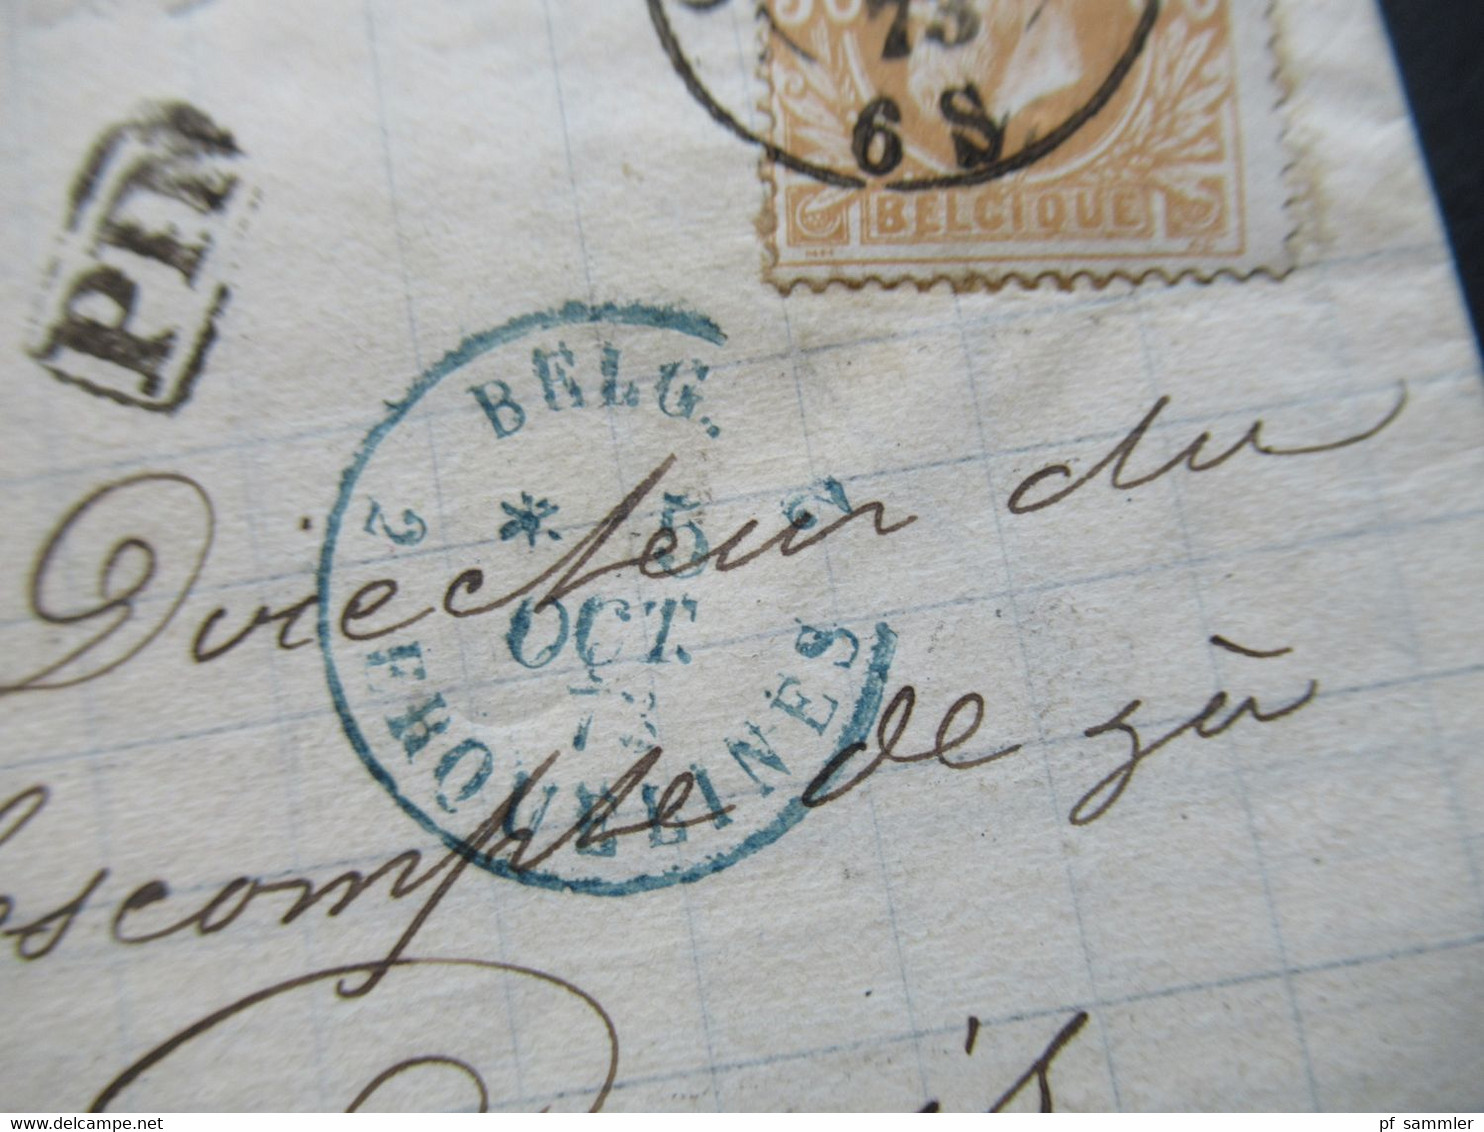 Belgien 1873 EF Nr.30 Auslandsbrief Charleroy - Paris Blauer K2 Belg. 2 Erquelines / PD Gedruckter Faltbrief Mit Inhalt - 1869-1883 Leopoldo II